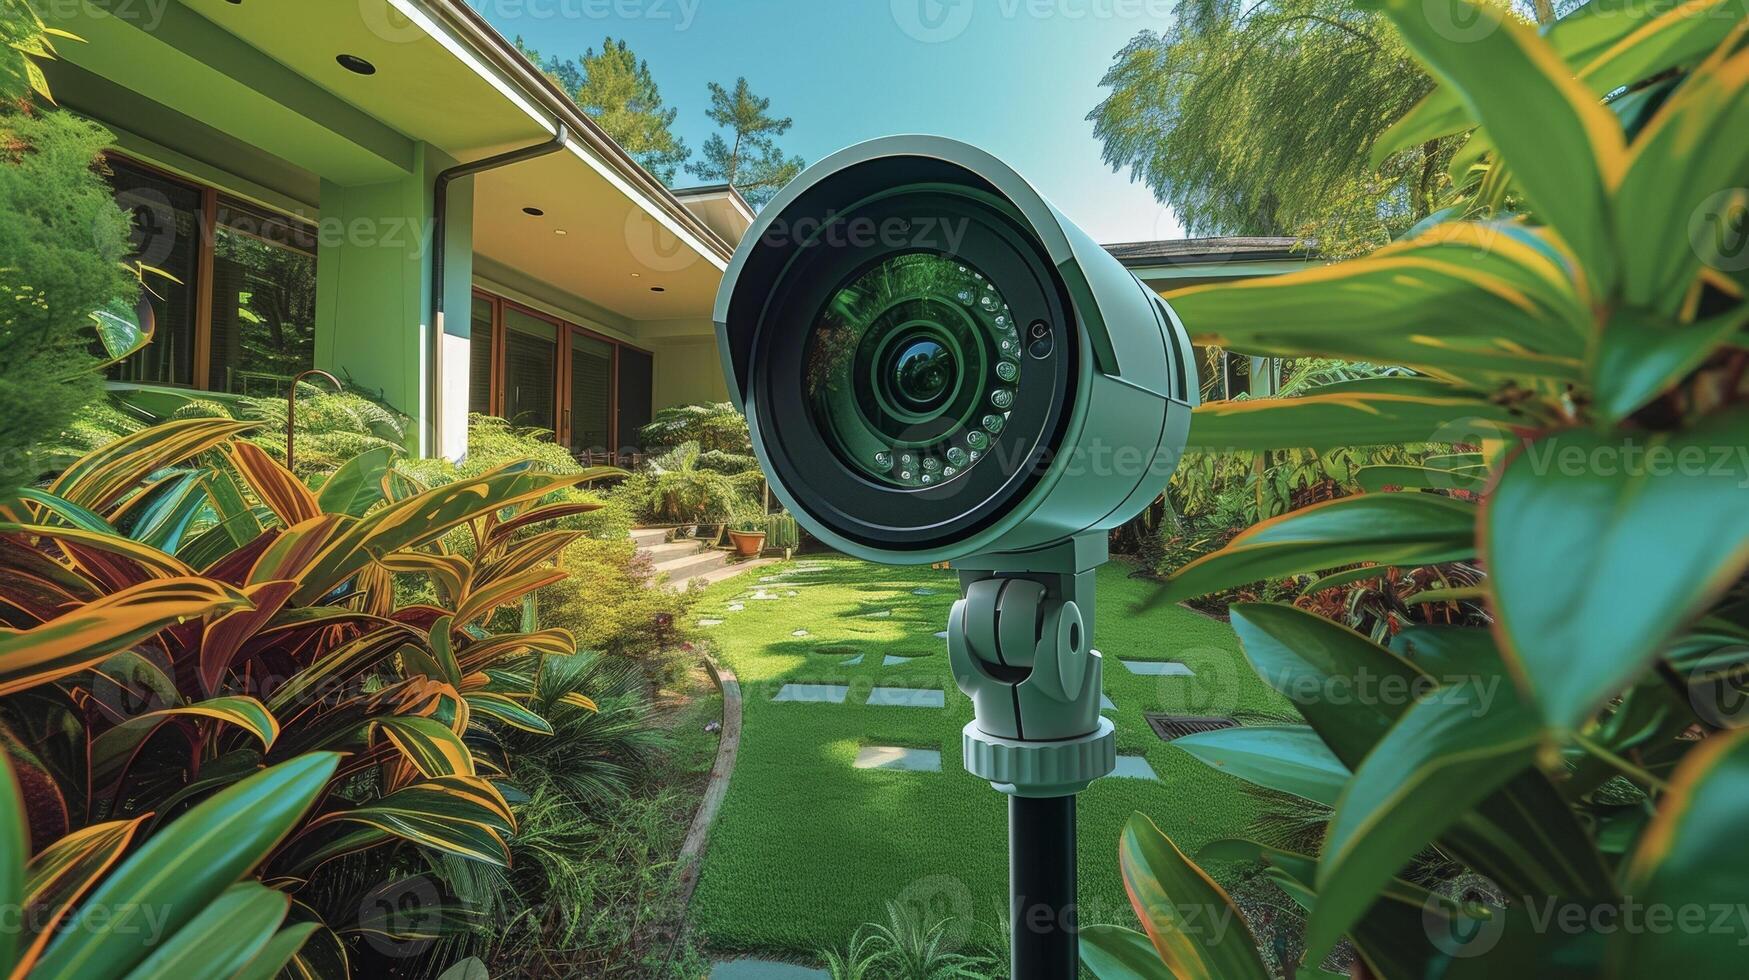 makro se av en säkerhet kamera varelse placerad till omslag de hel omkrets av de hus med dess bred vinkel lins foto